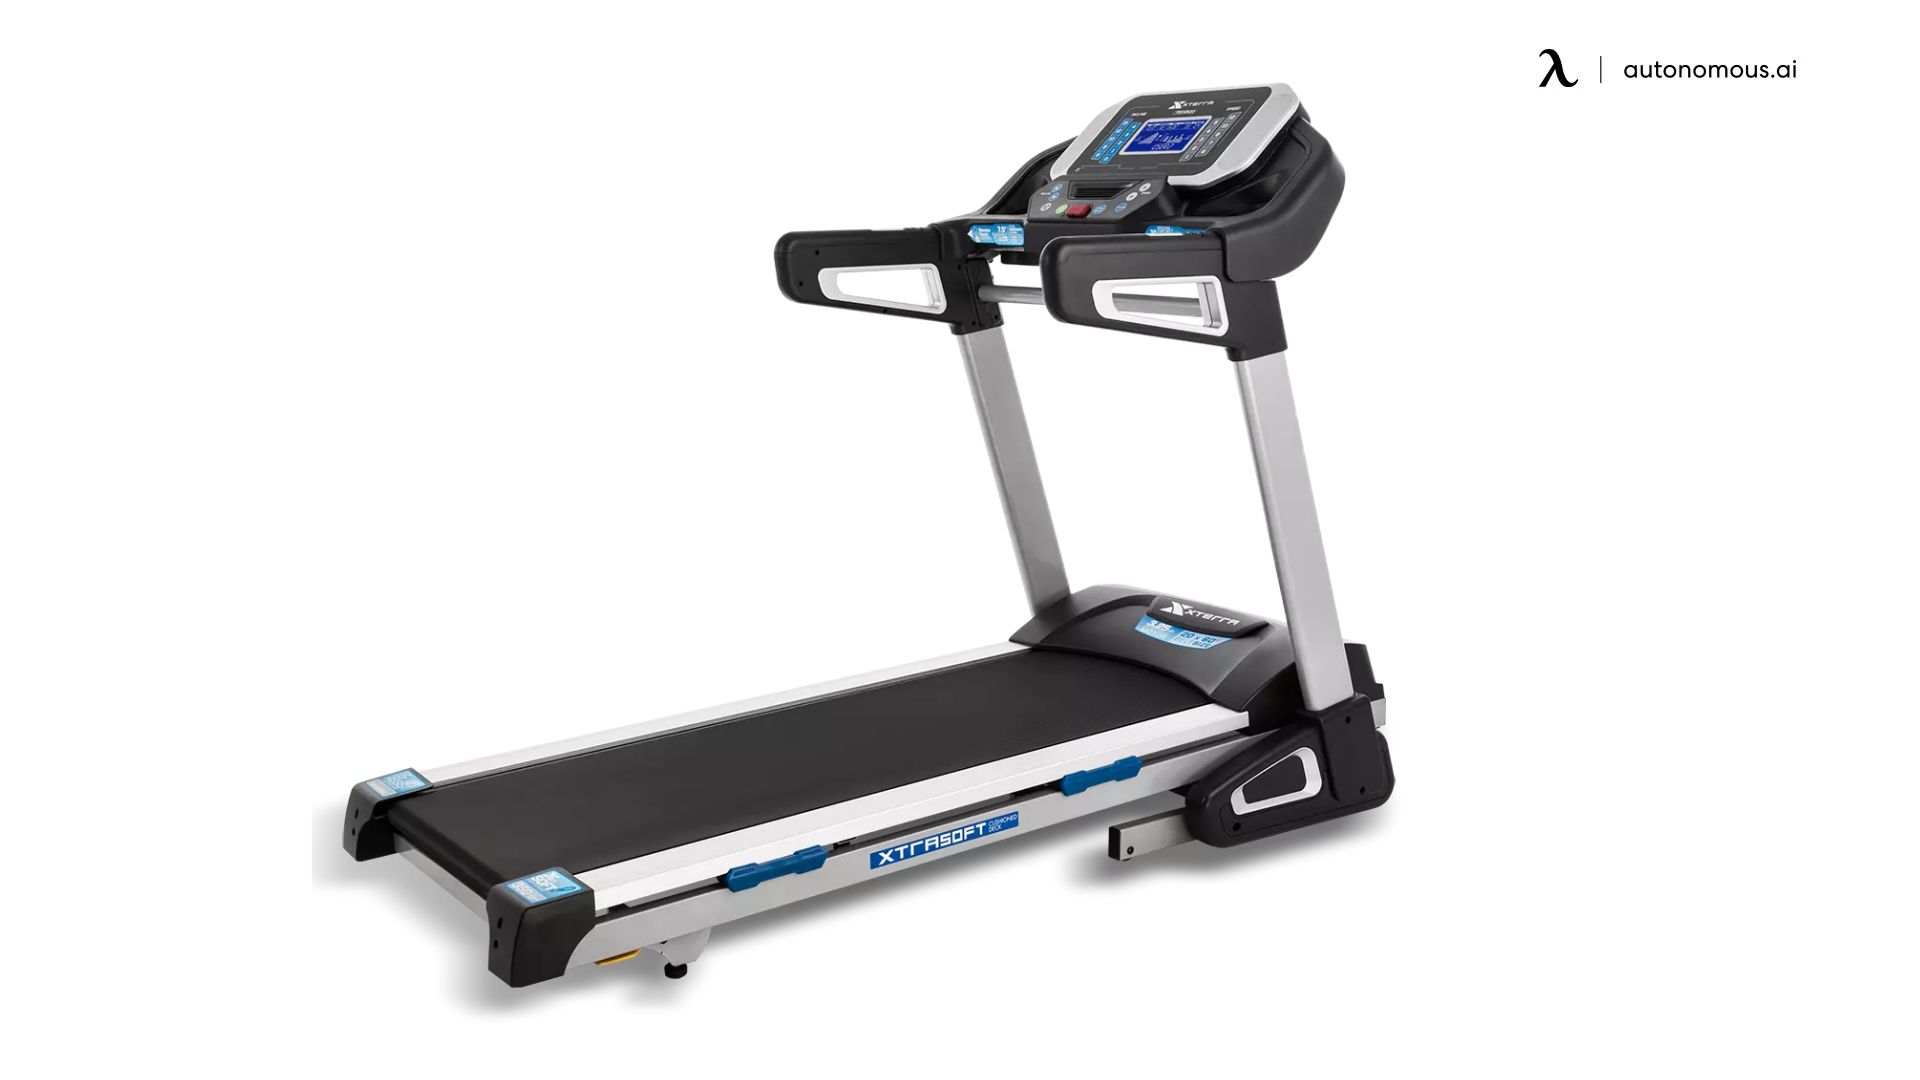 TRX4500 Treadmill